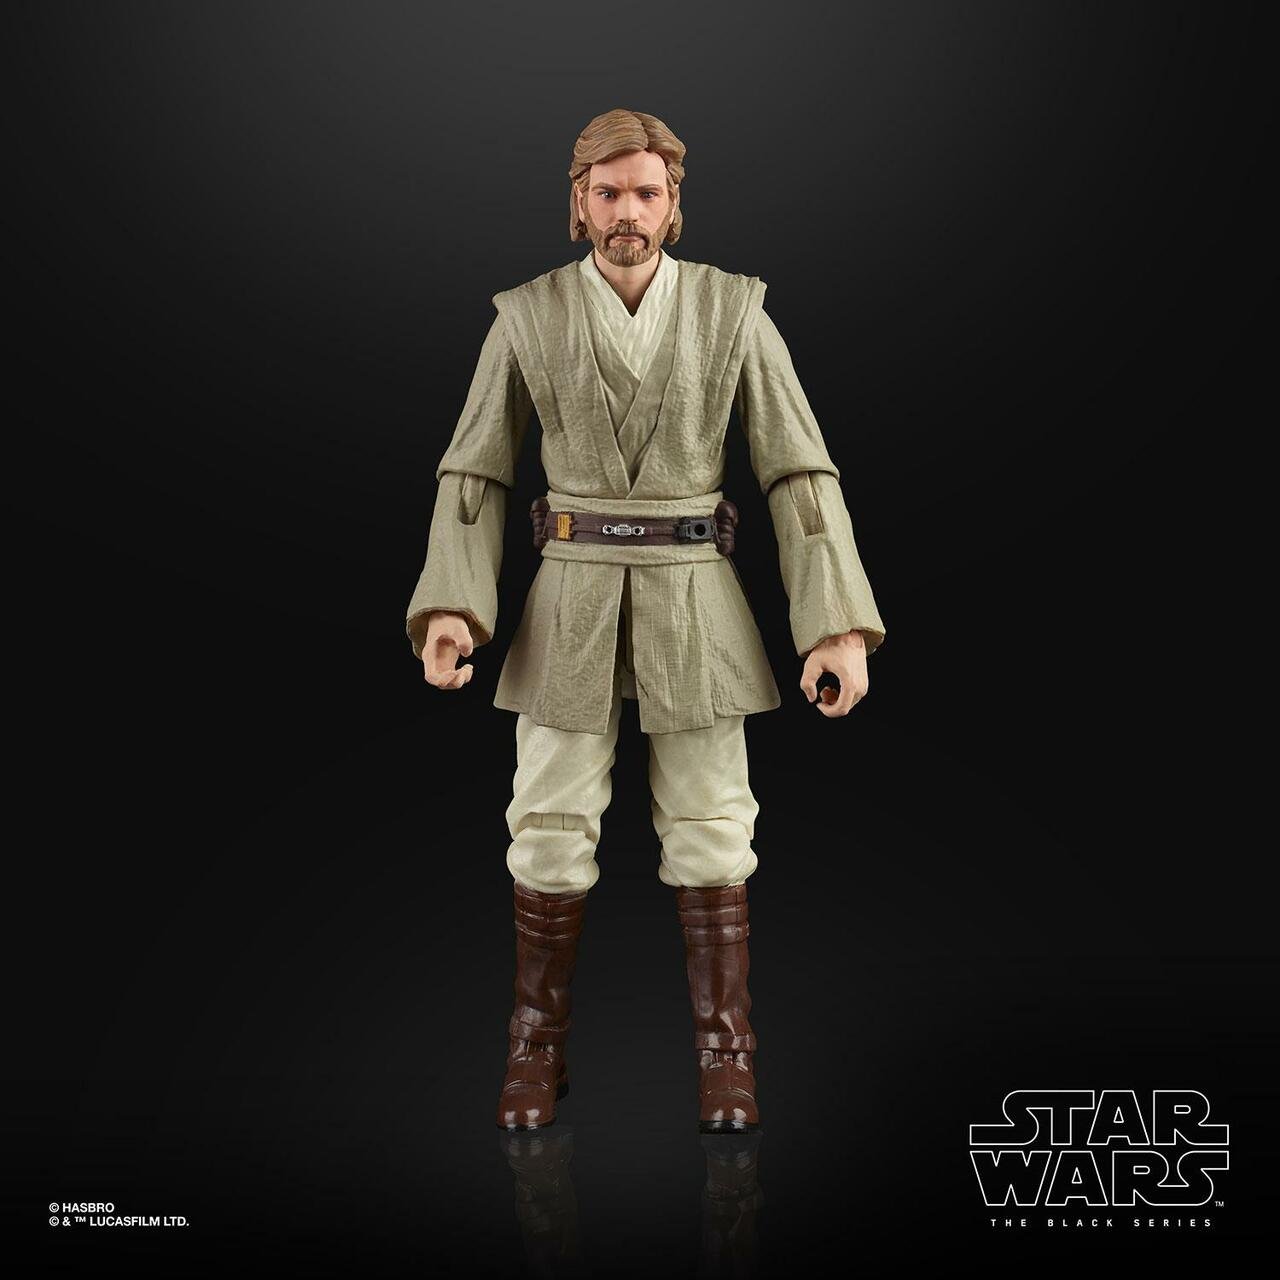 Star Wars: The Black Series 6" Obi-Wan Kenobi (Attack of the Clones)